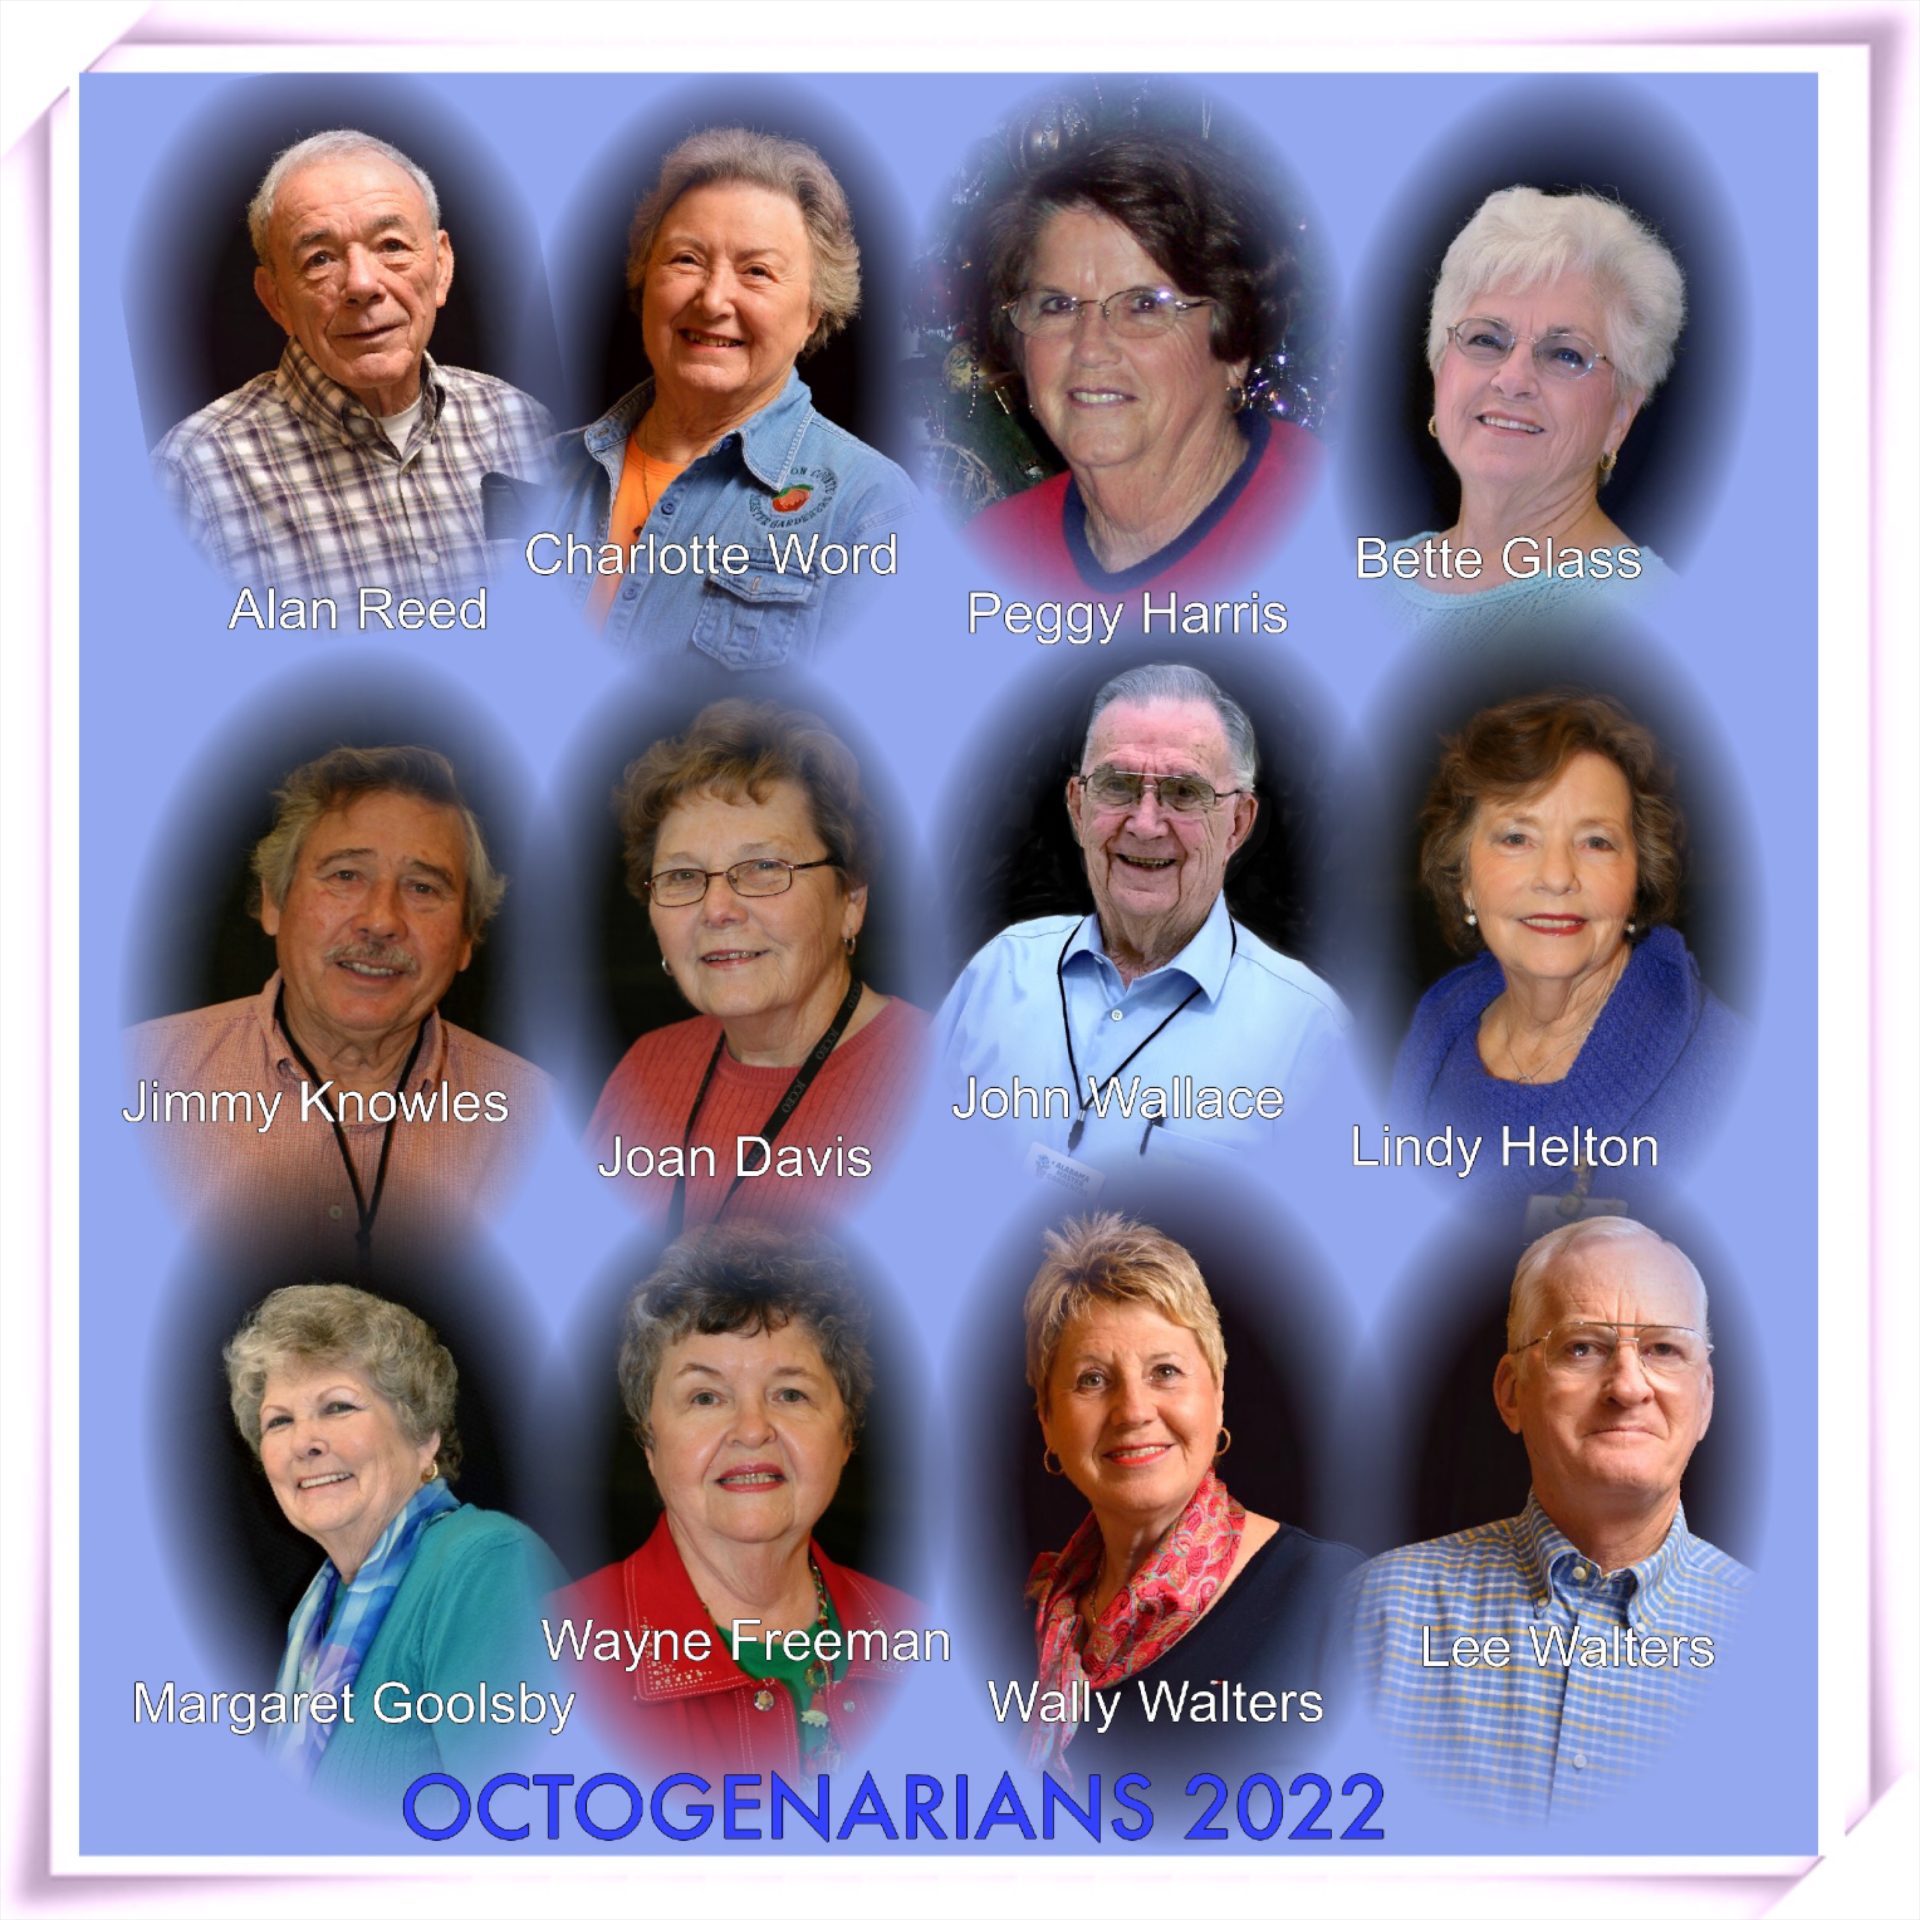 Octogenarians for 2022